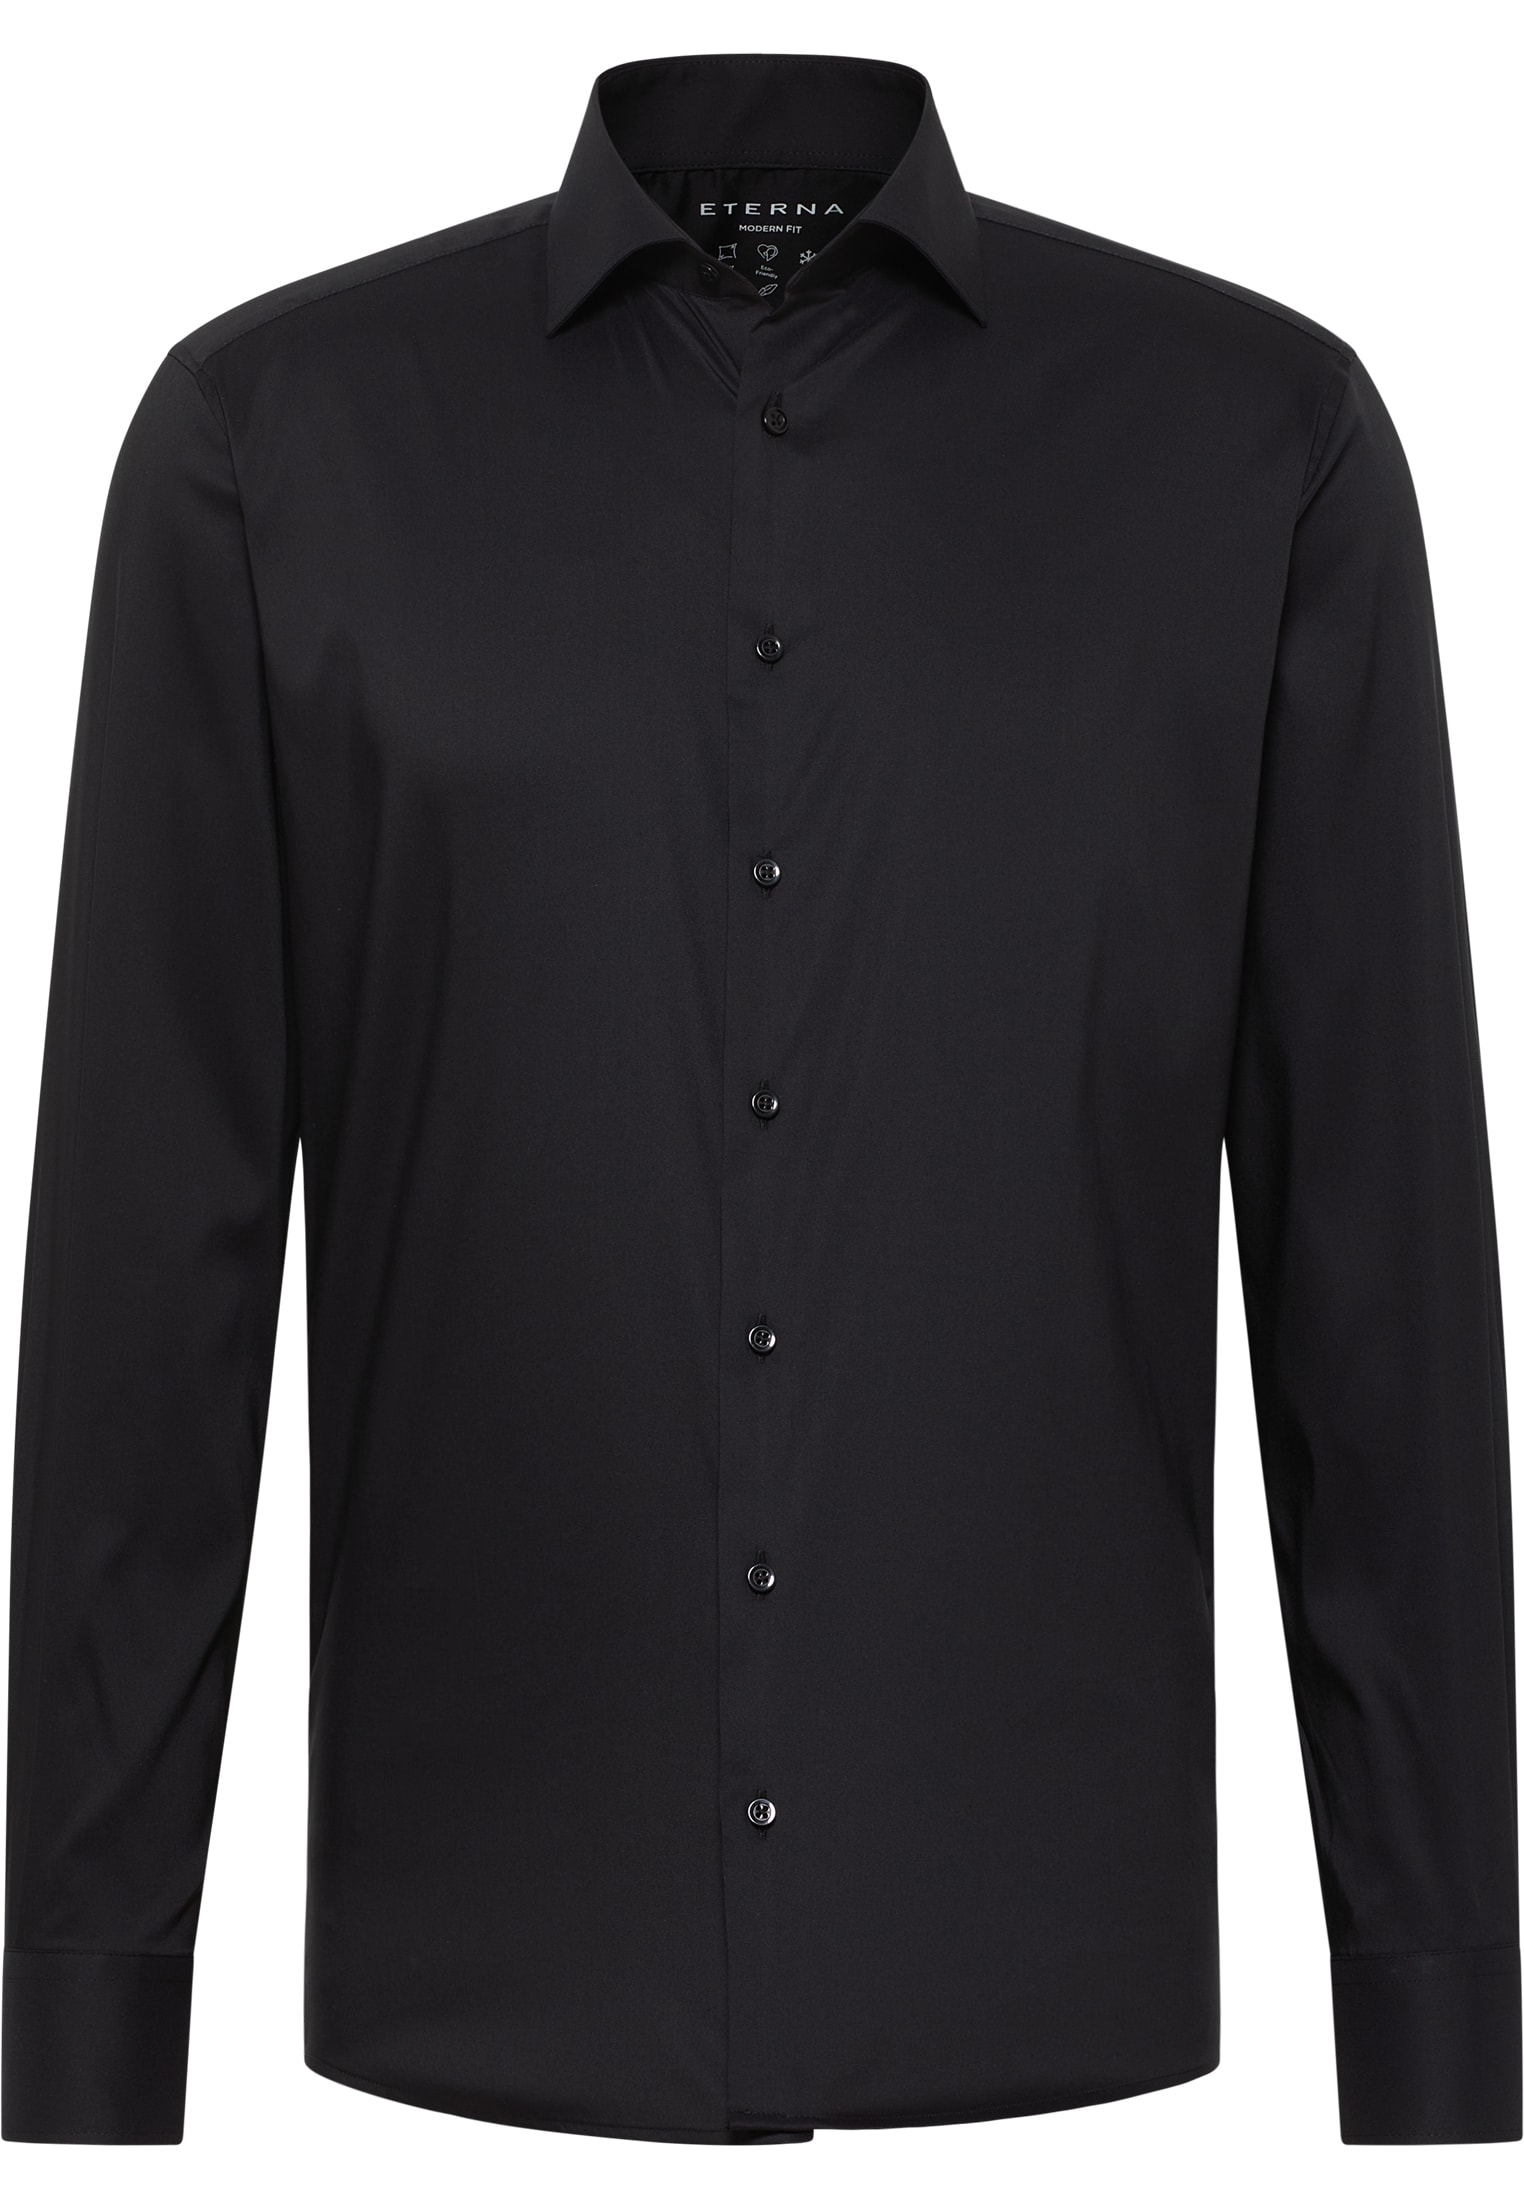 MODERN FIT Performance Shirt in schwarz unifarben